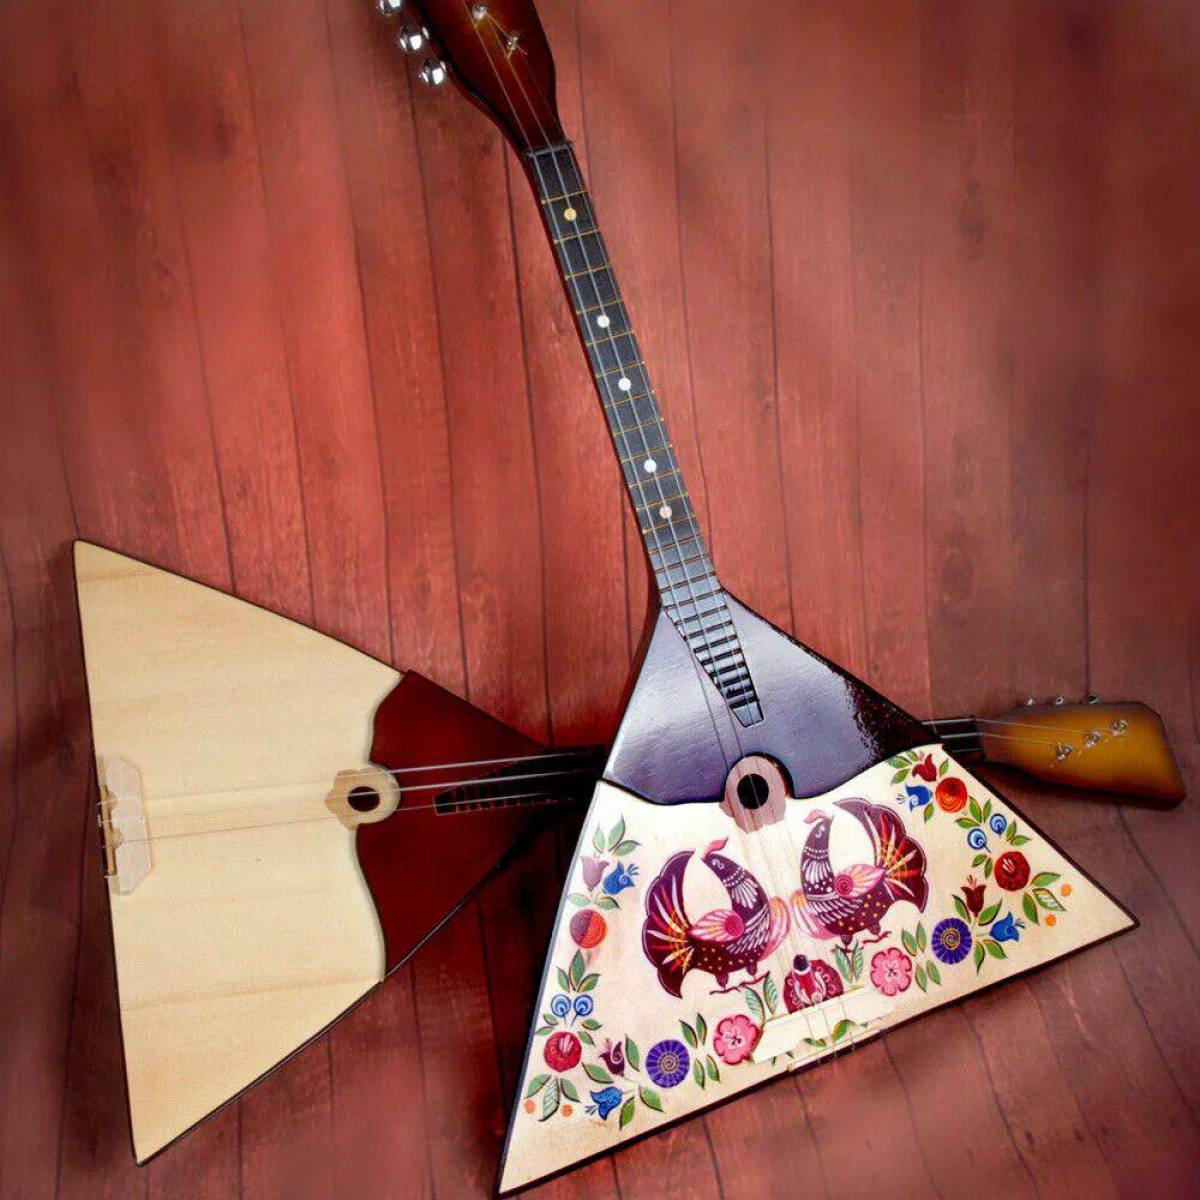 Музыка балалайка слушать. Русские народные музыкальные инструменты балалайка. Балалайка 6 струн. Балалайка струнные Щипковые музыкальные инструменты. Балалайка Прима.